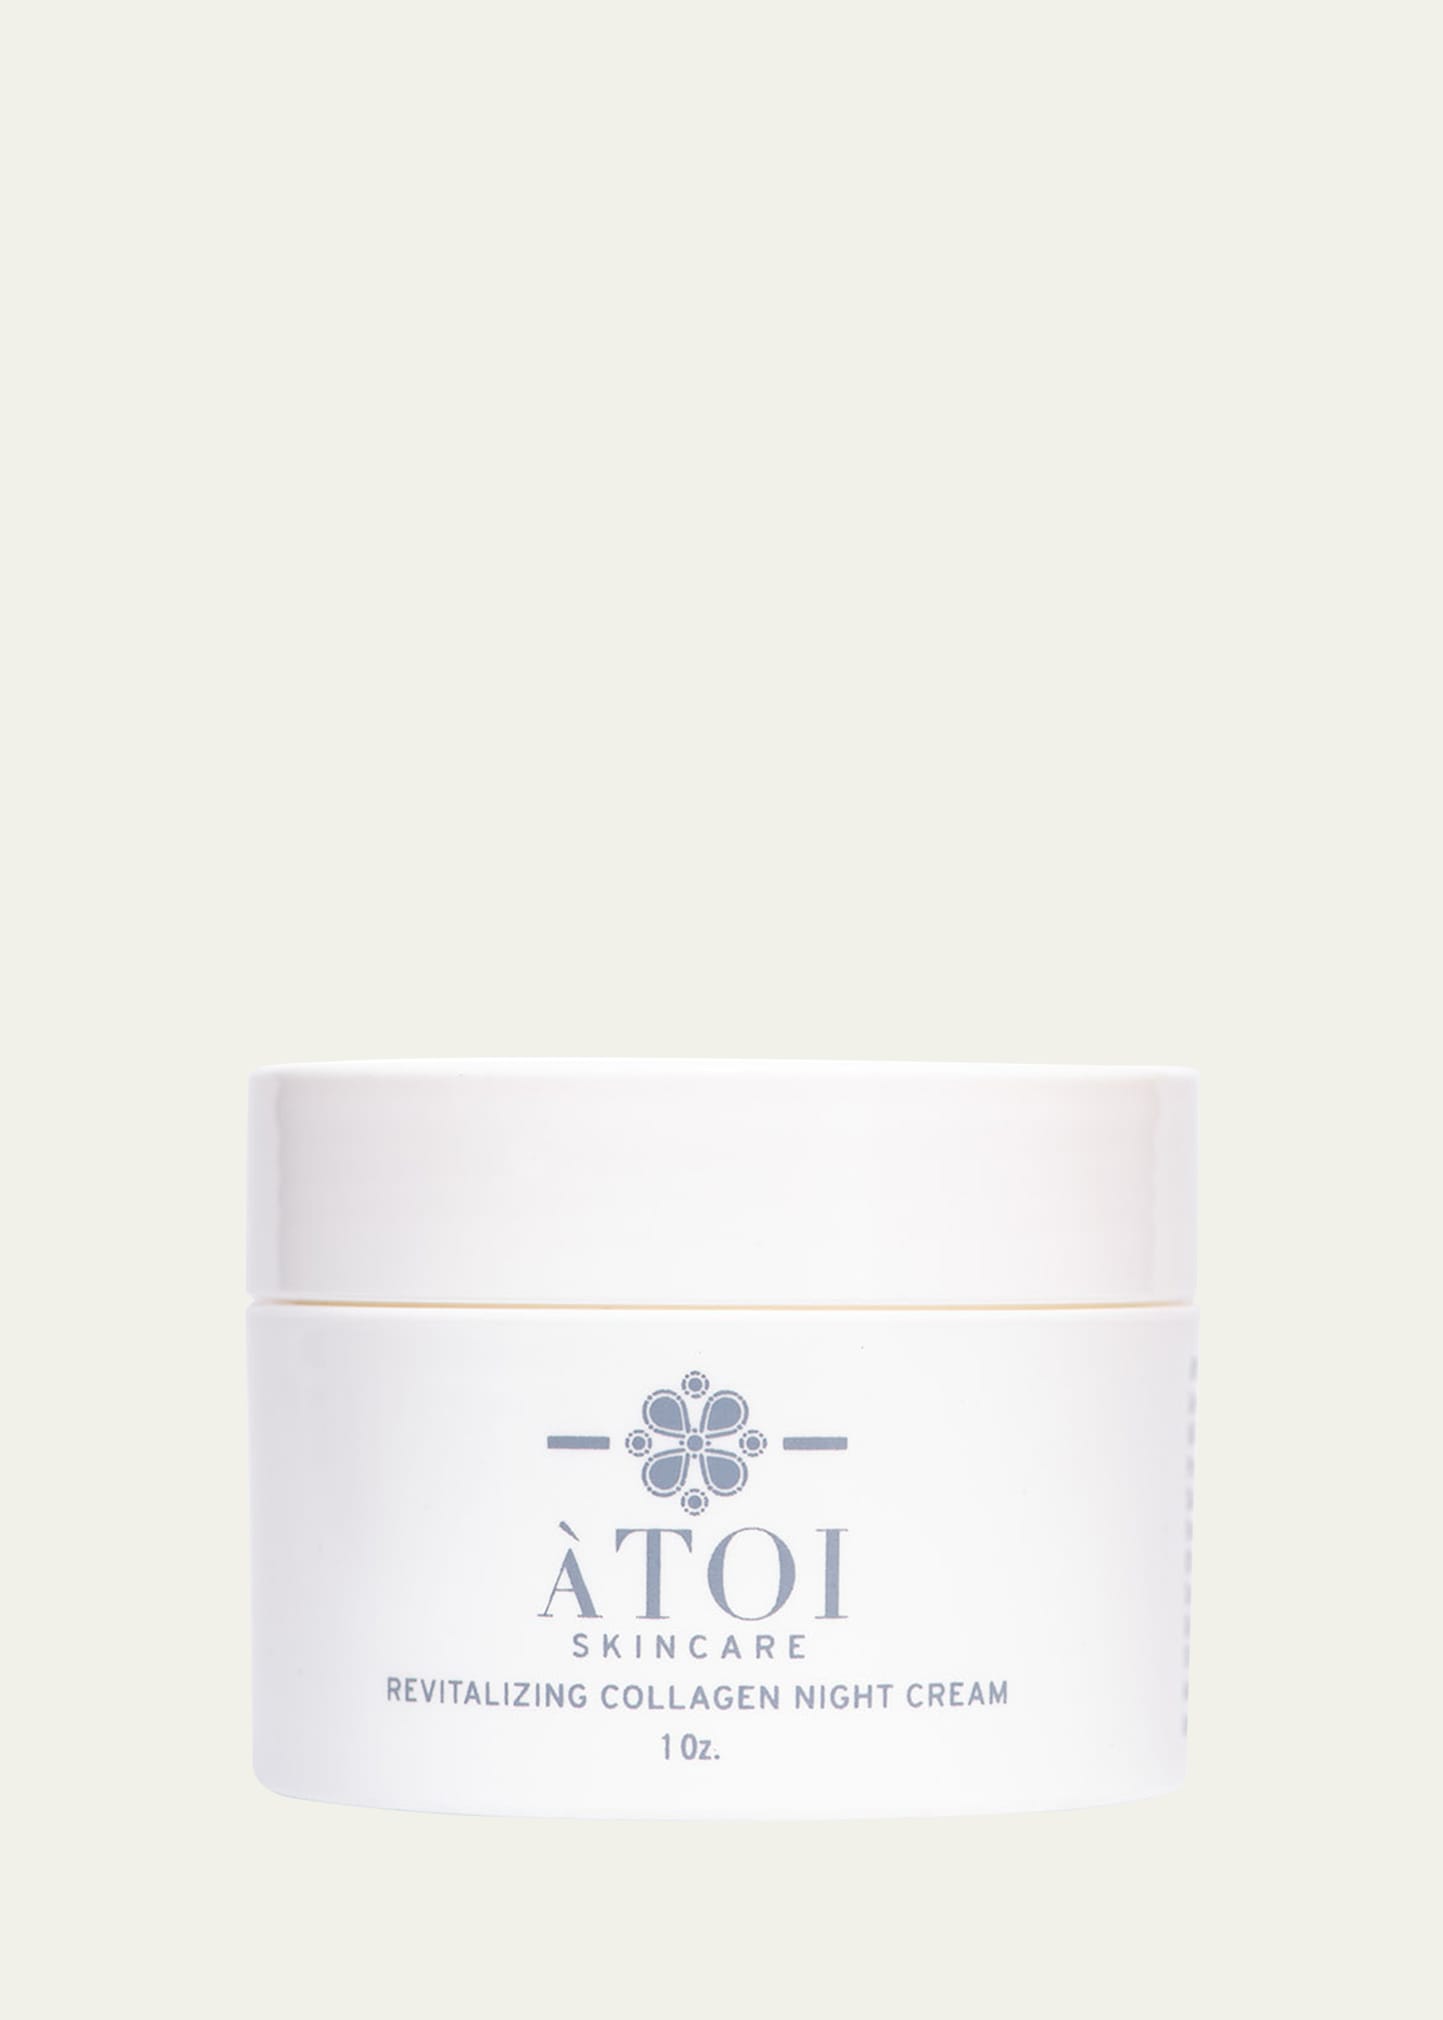 ATOI Skincare 1 oz. Revitalizing Collagen Night Cream